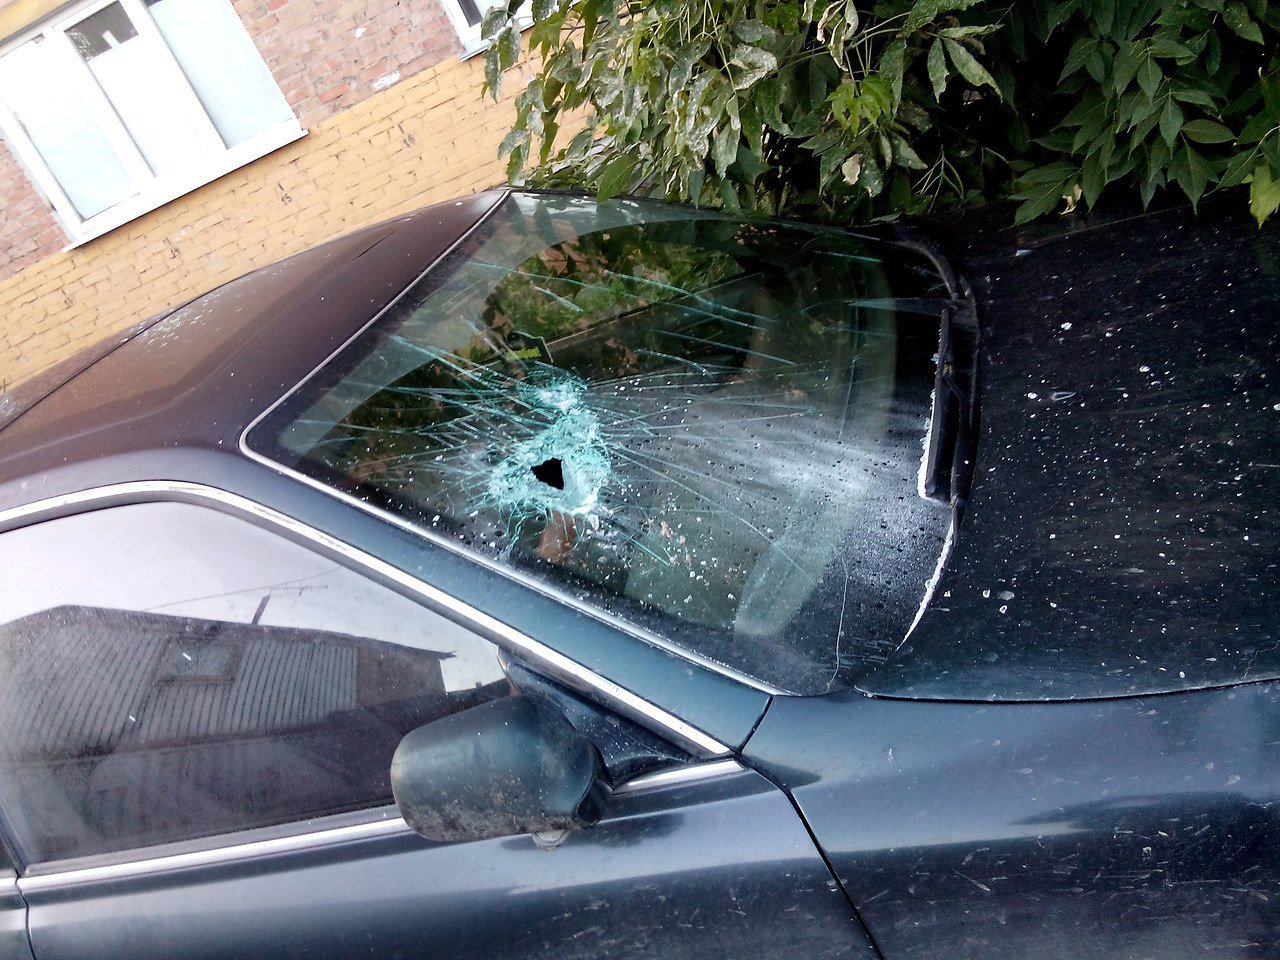 Разбитые z. Разбитое лобовое стекло. Разбитое стекло автомобиля. Автомобиль с разбитым стеклом. Разбили стекло в машине.